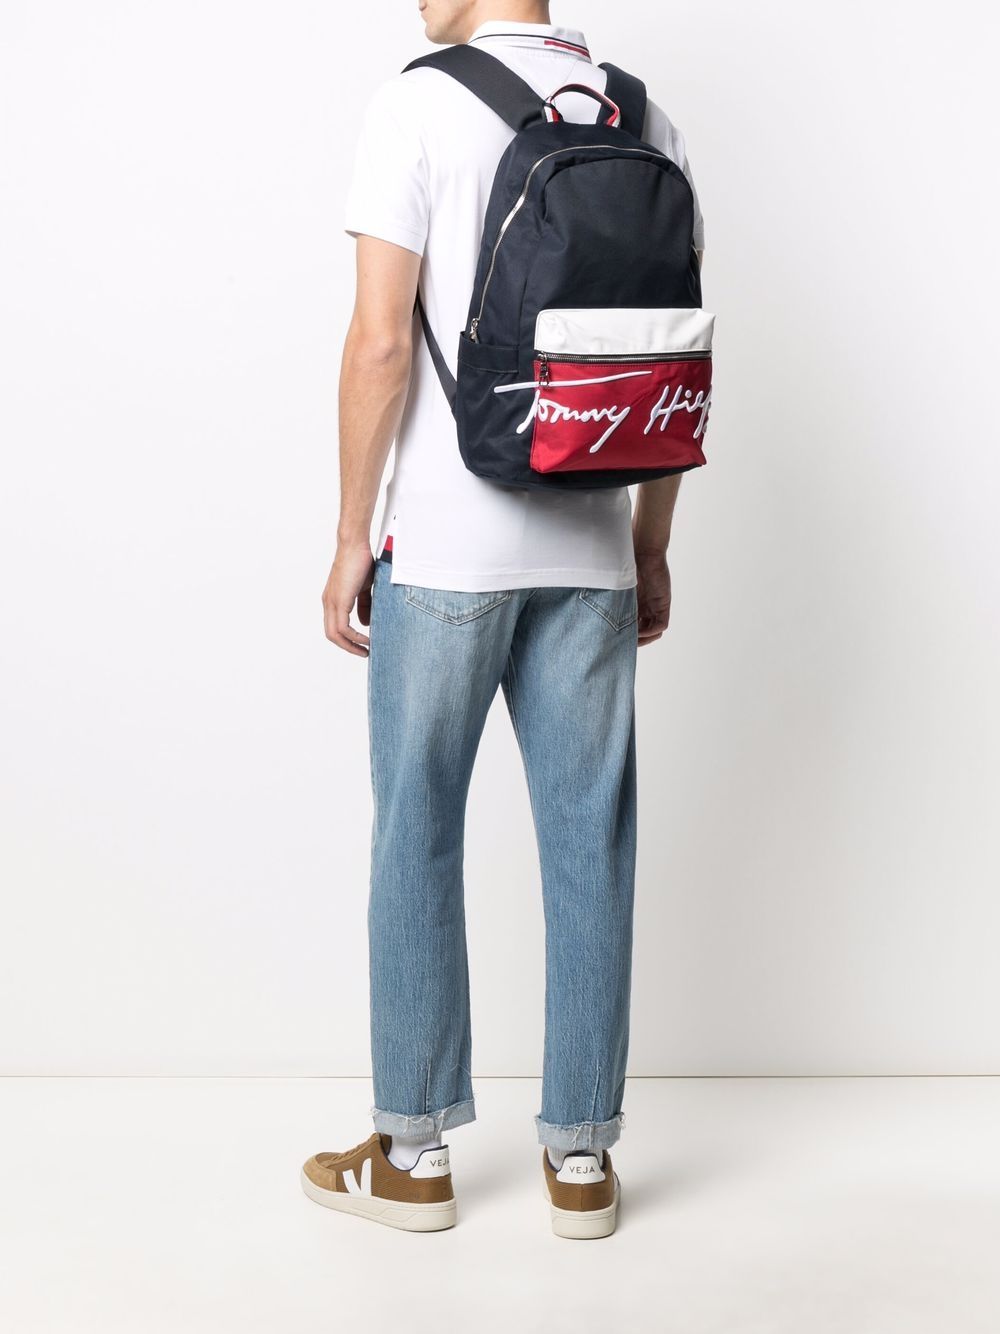 фото Tommy hilfiger рюкзак в стиле колор-блок с вышитым логотипом